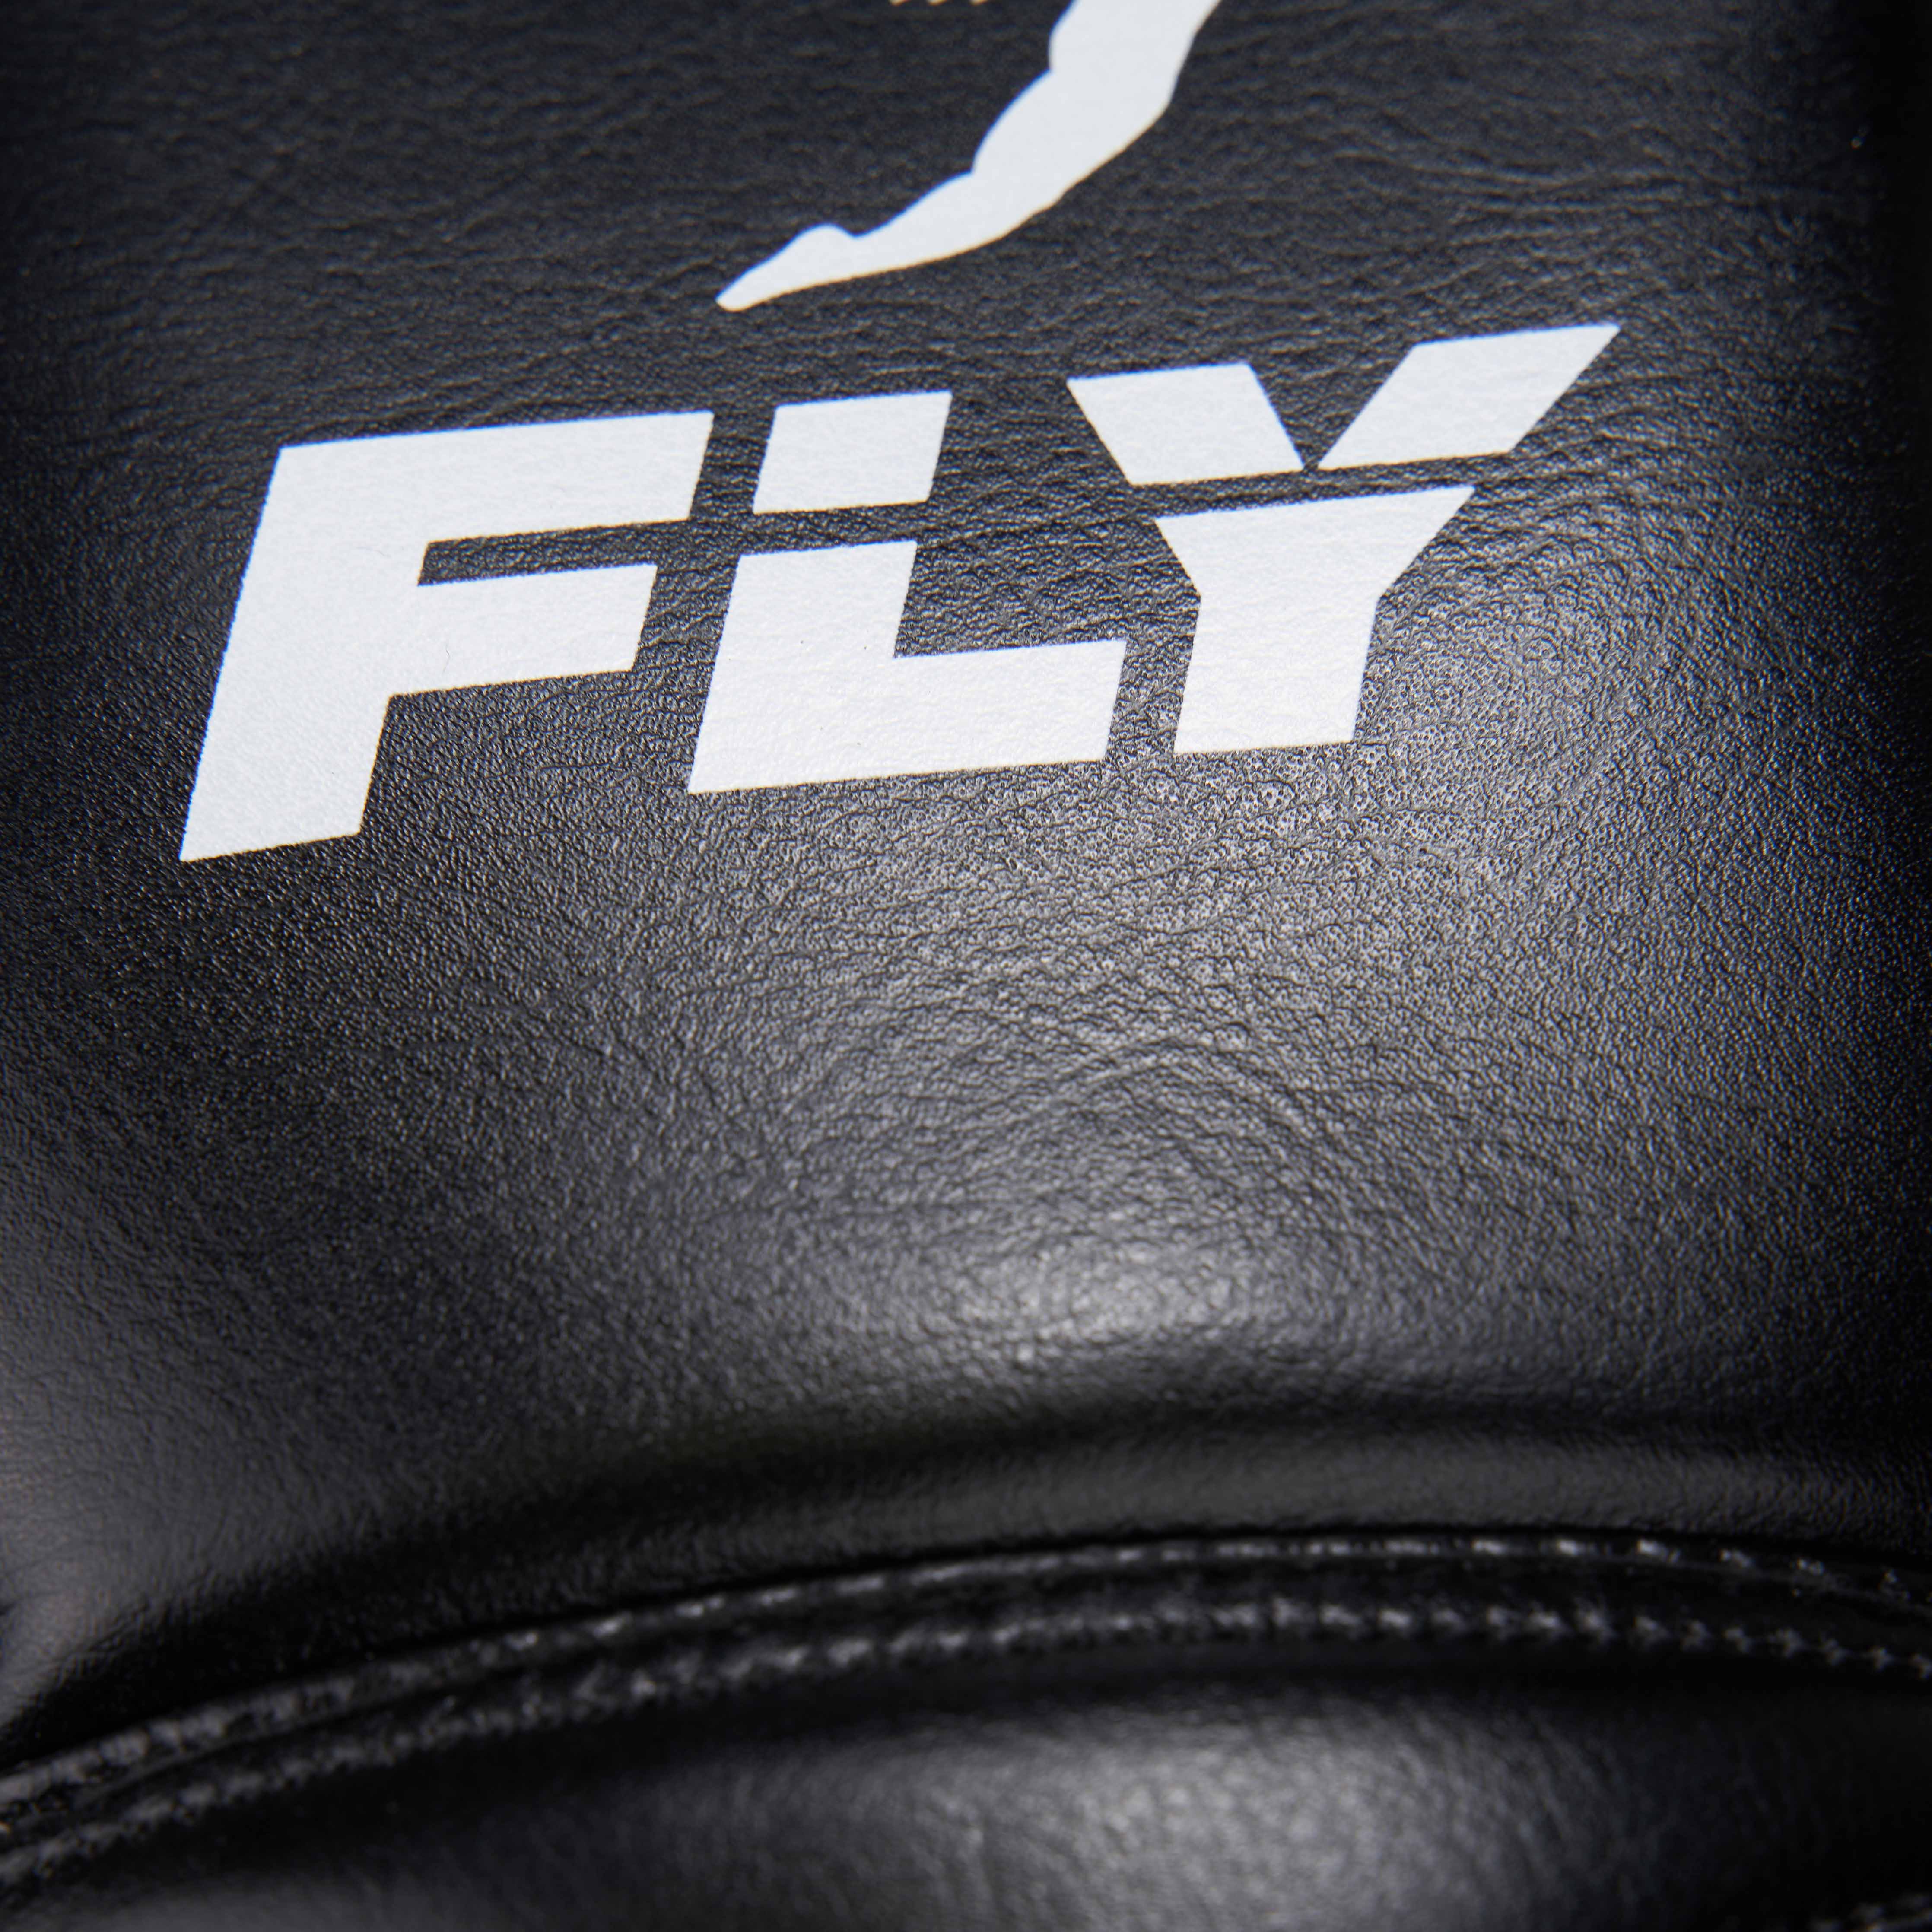 Fly Superlace – FLY USA